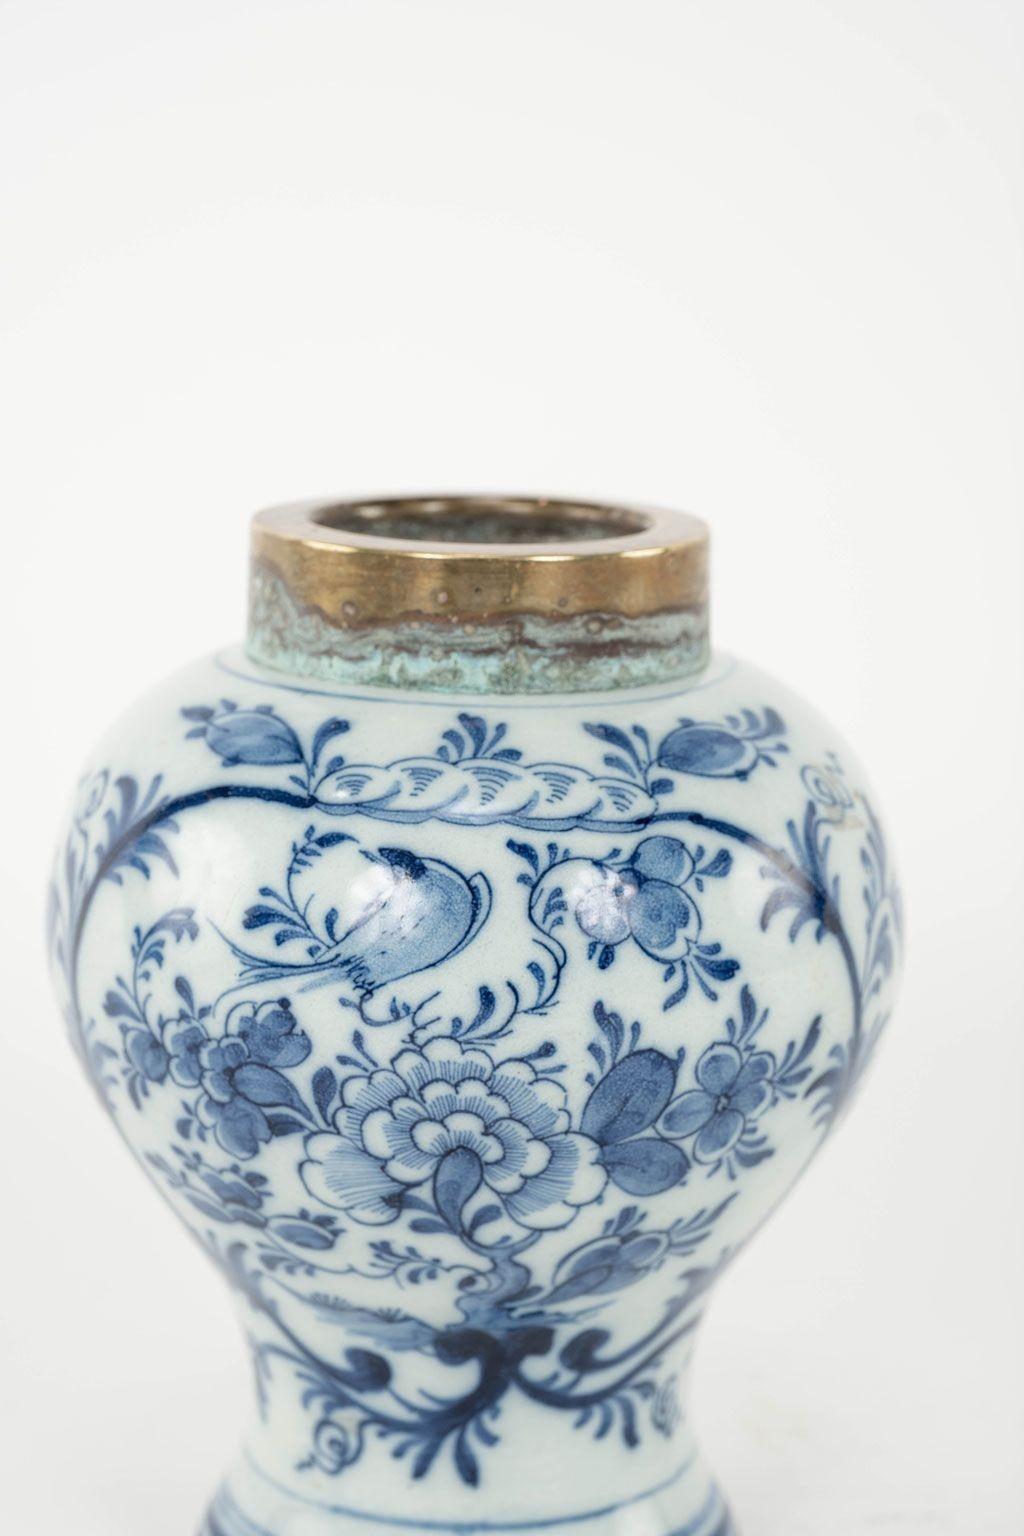 19th Century Petite Blue & White Delft Tobacco Jar For Sale